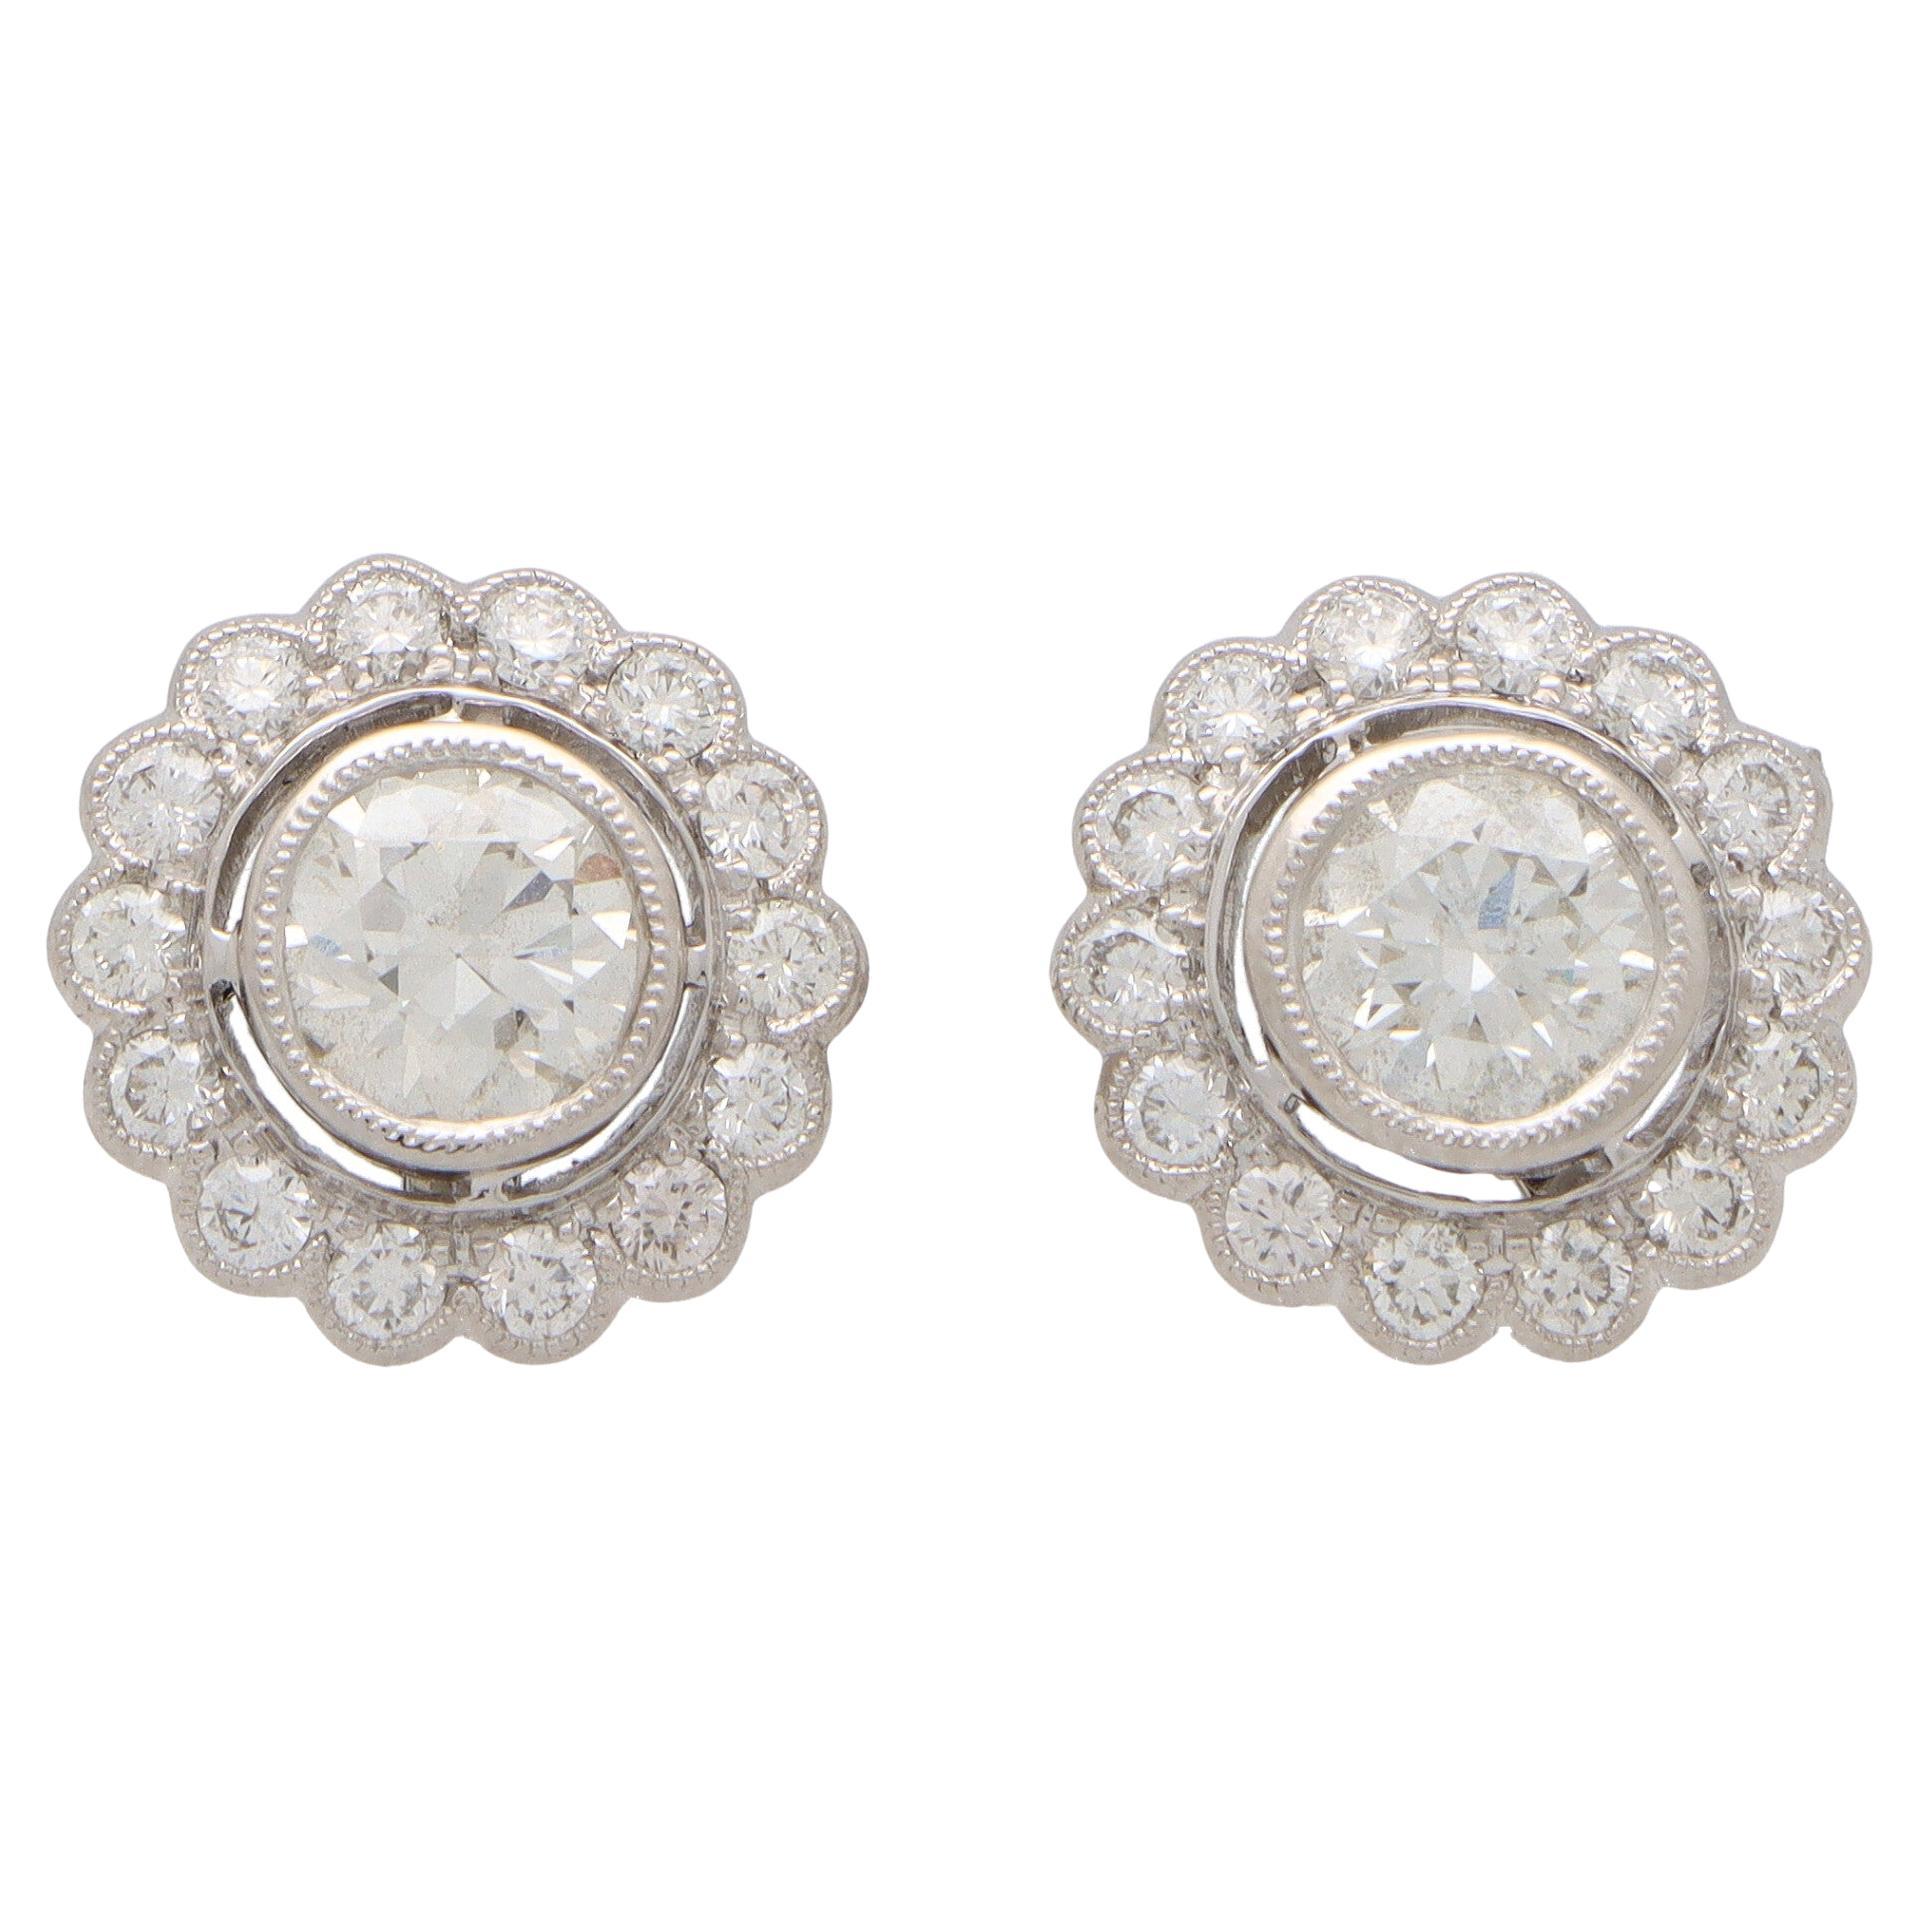 Diamond Floral Cluster Stud Earrings Set in Platinum